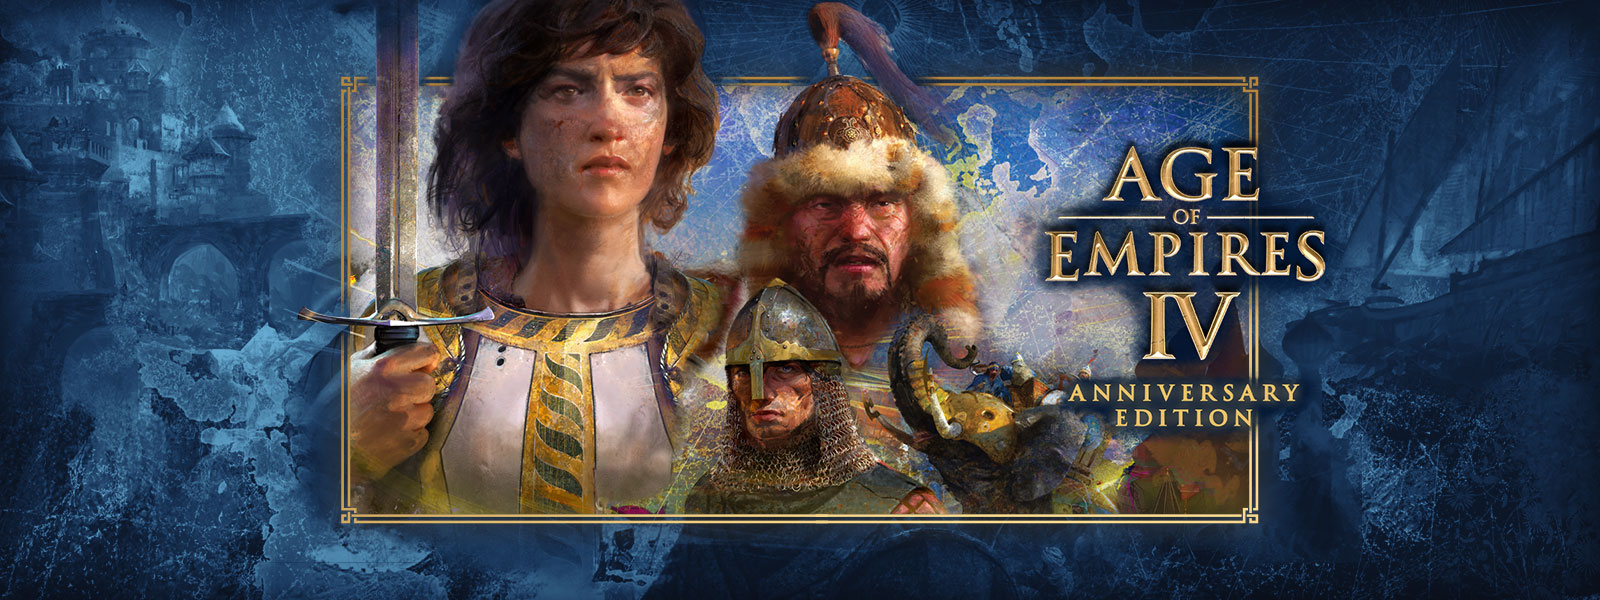 Age of Empires IV: Anniversary Edition. Trois personnages avec des scènes de guerre et des éléphants avec armure autour d’eux.